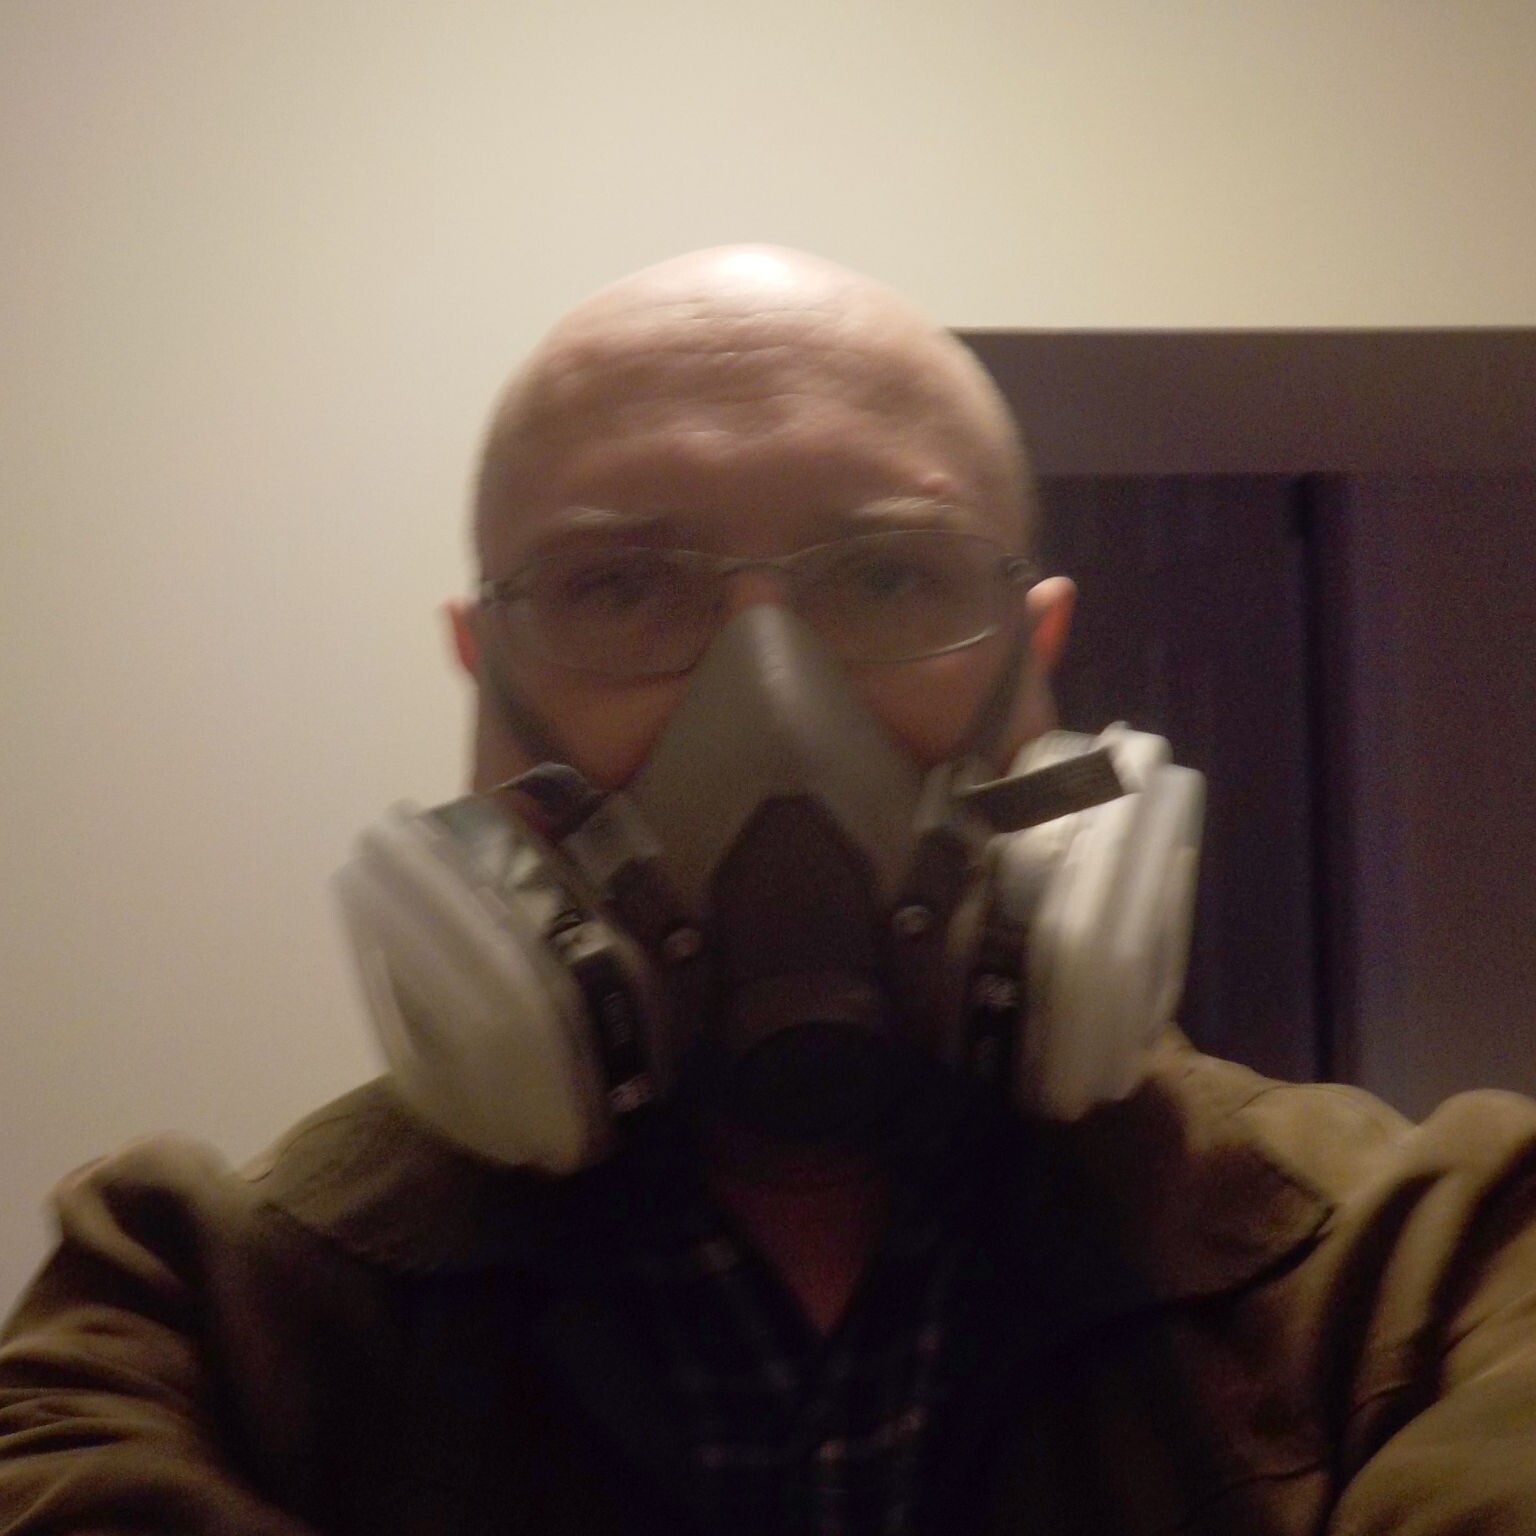 Matt wearing a half-face organic vapour respirator